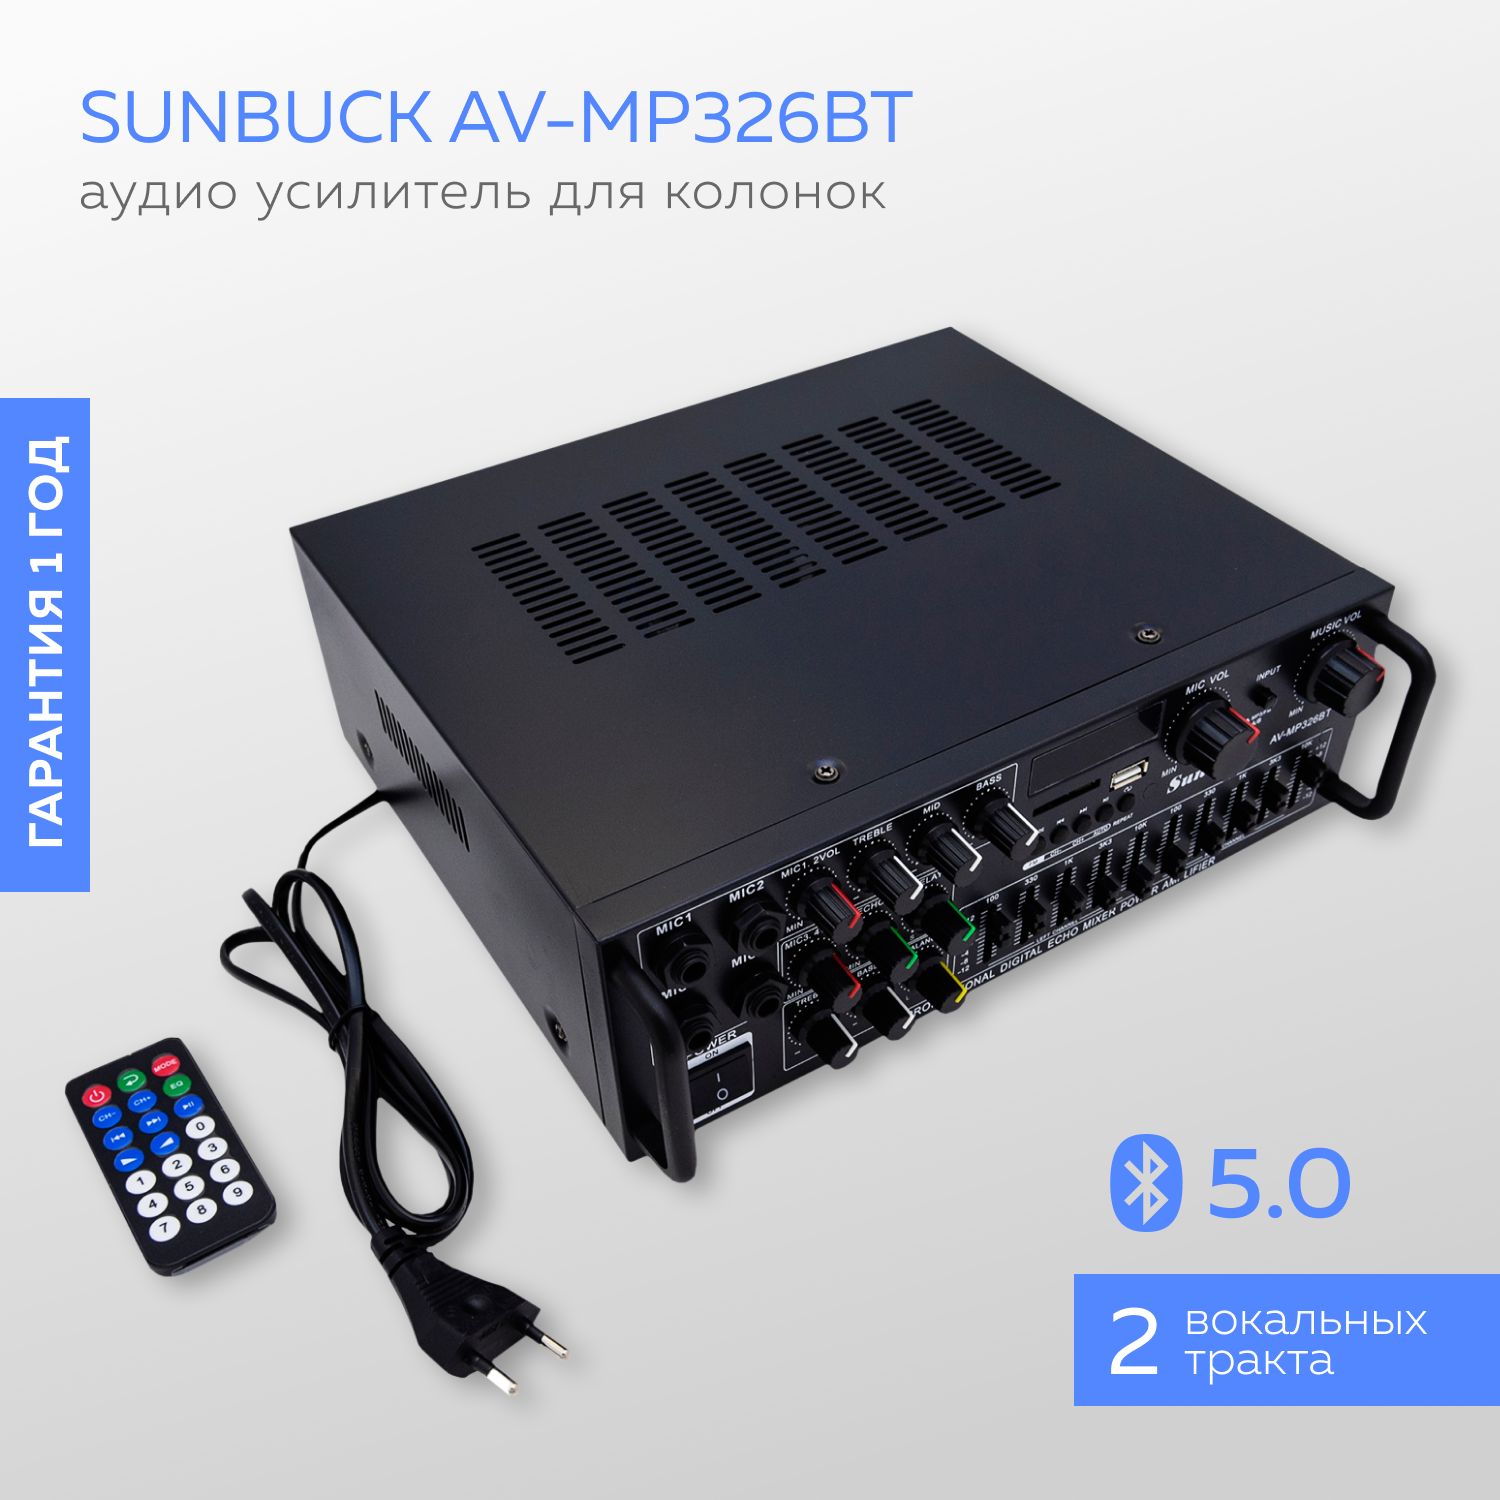 Av mp326bt. Sunbuck av-mp326bt. Sunbuck av-660bt. Sunbuck av-mp326bt Bluetooth. Sanbuck av-MP 326 BT.